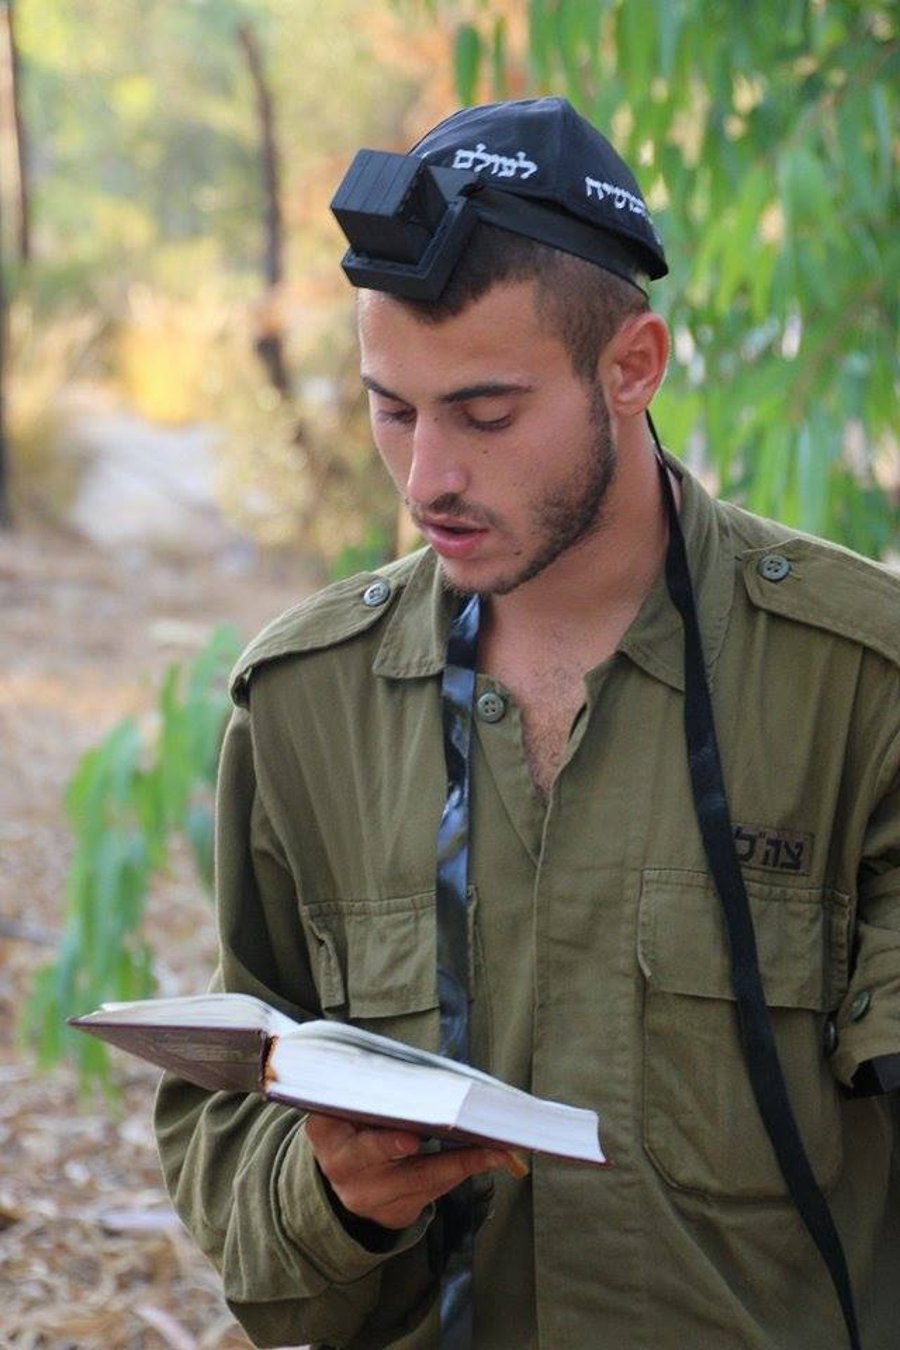 הנשק היהודי: חב"ד חילקו ספרי תהילים ללוחמים